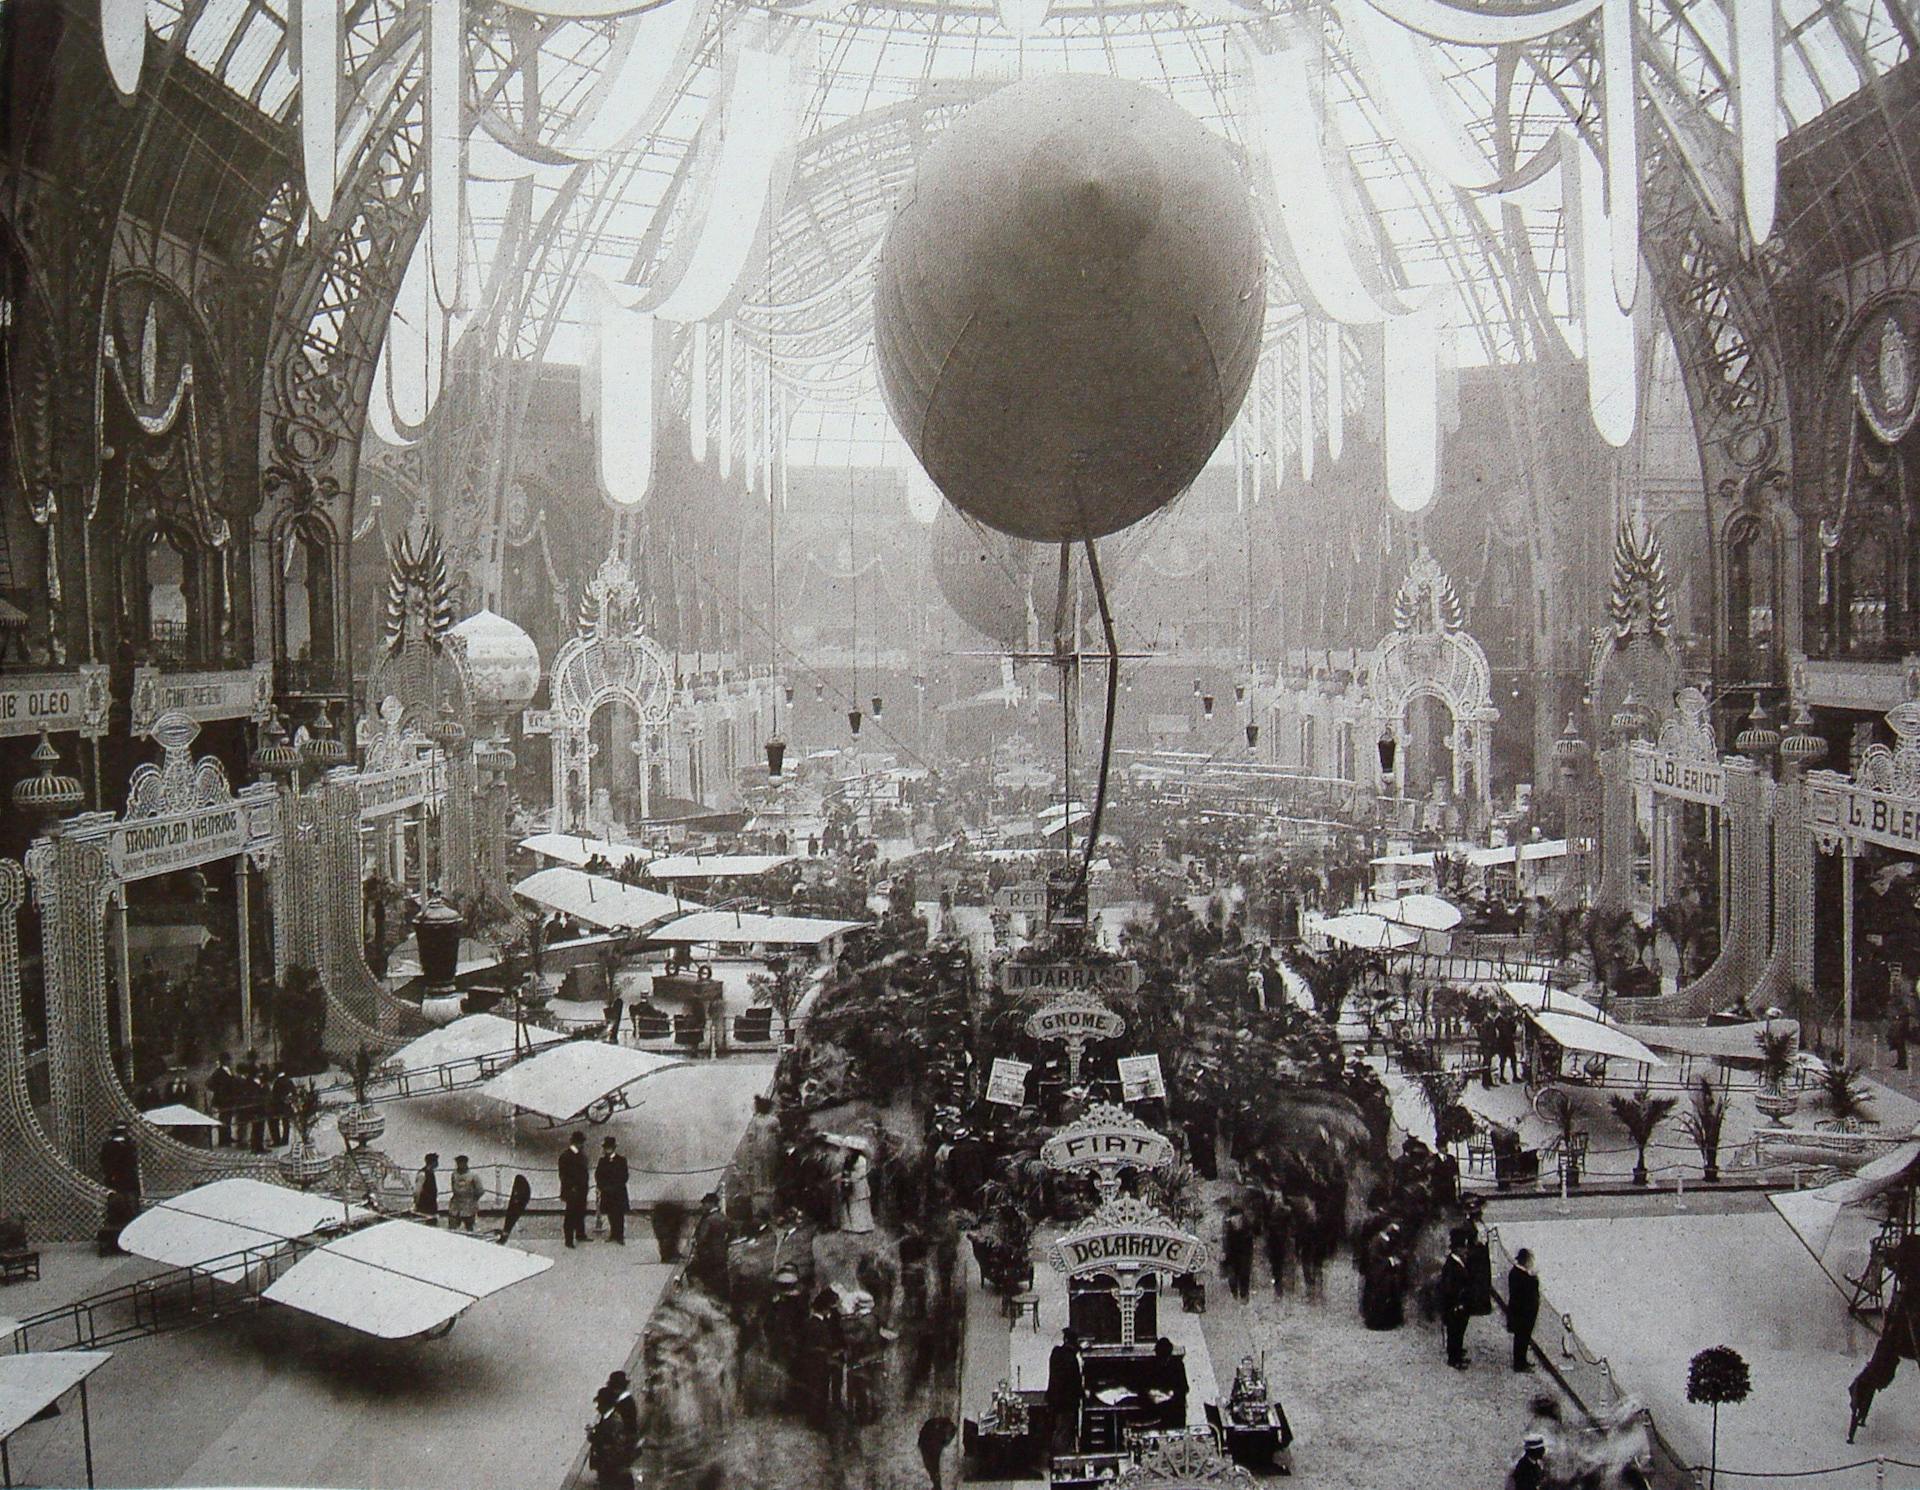 Salon de locomotion aerienne, 1909 Grand Palais Paris. Photographer unknown - Science & Vie, 2009.  